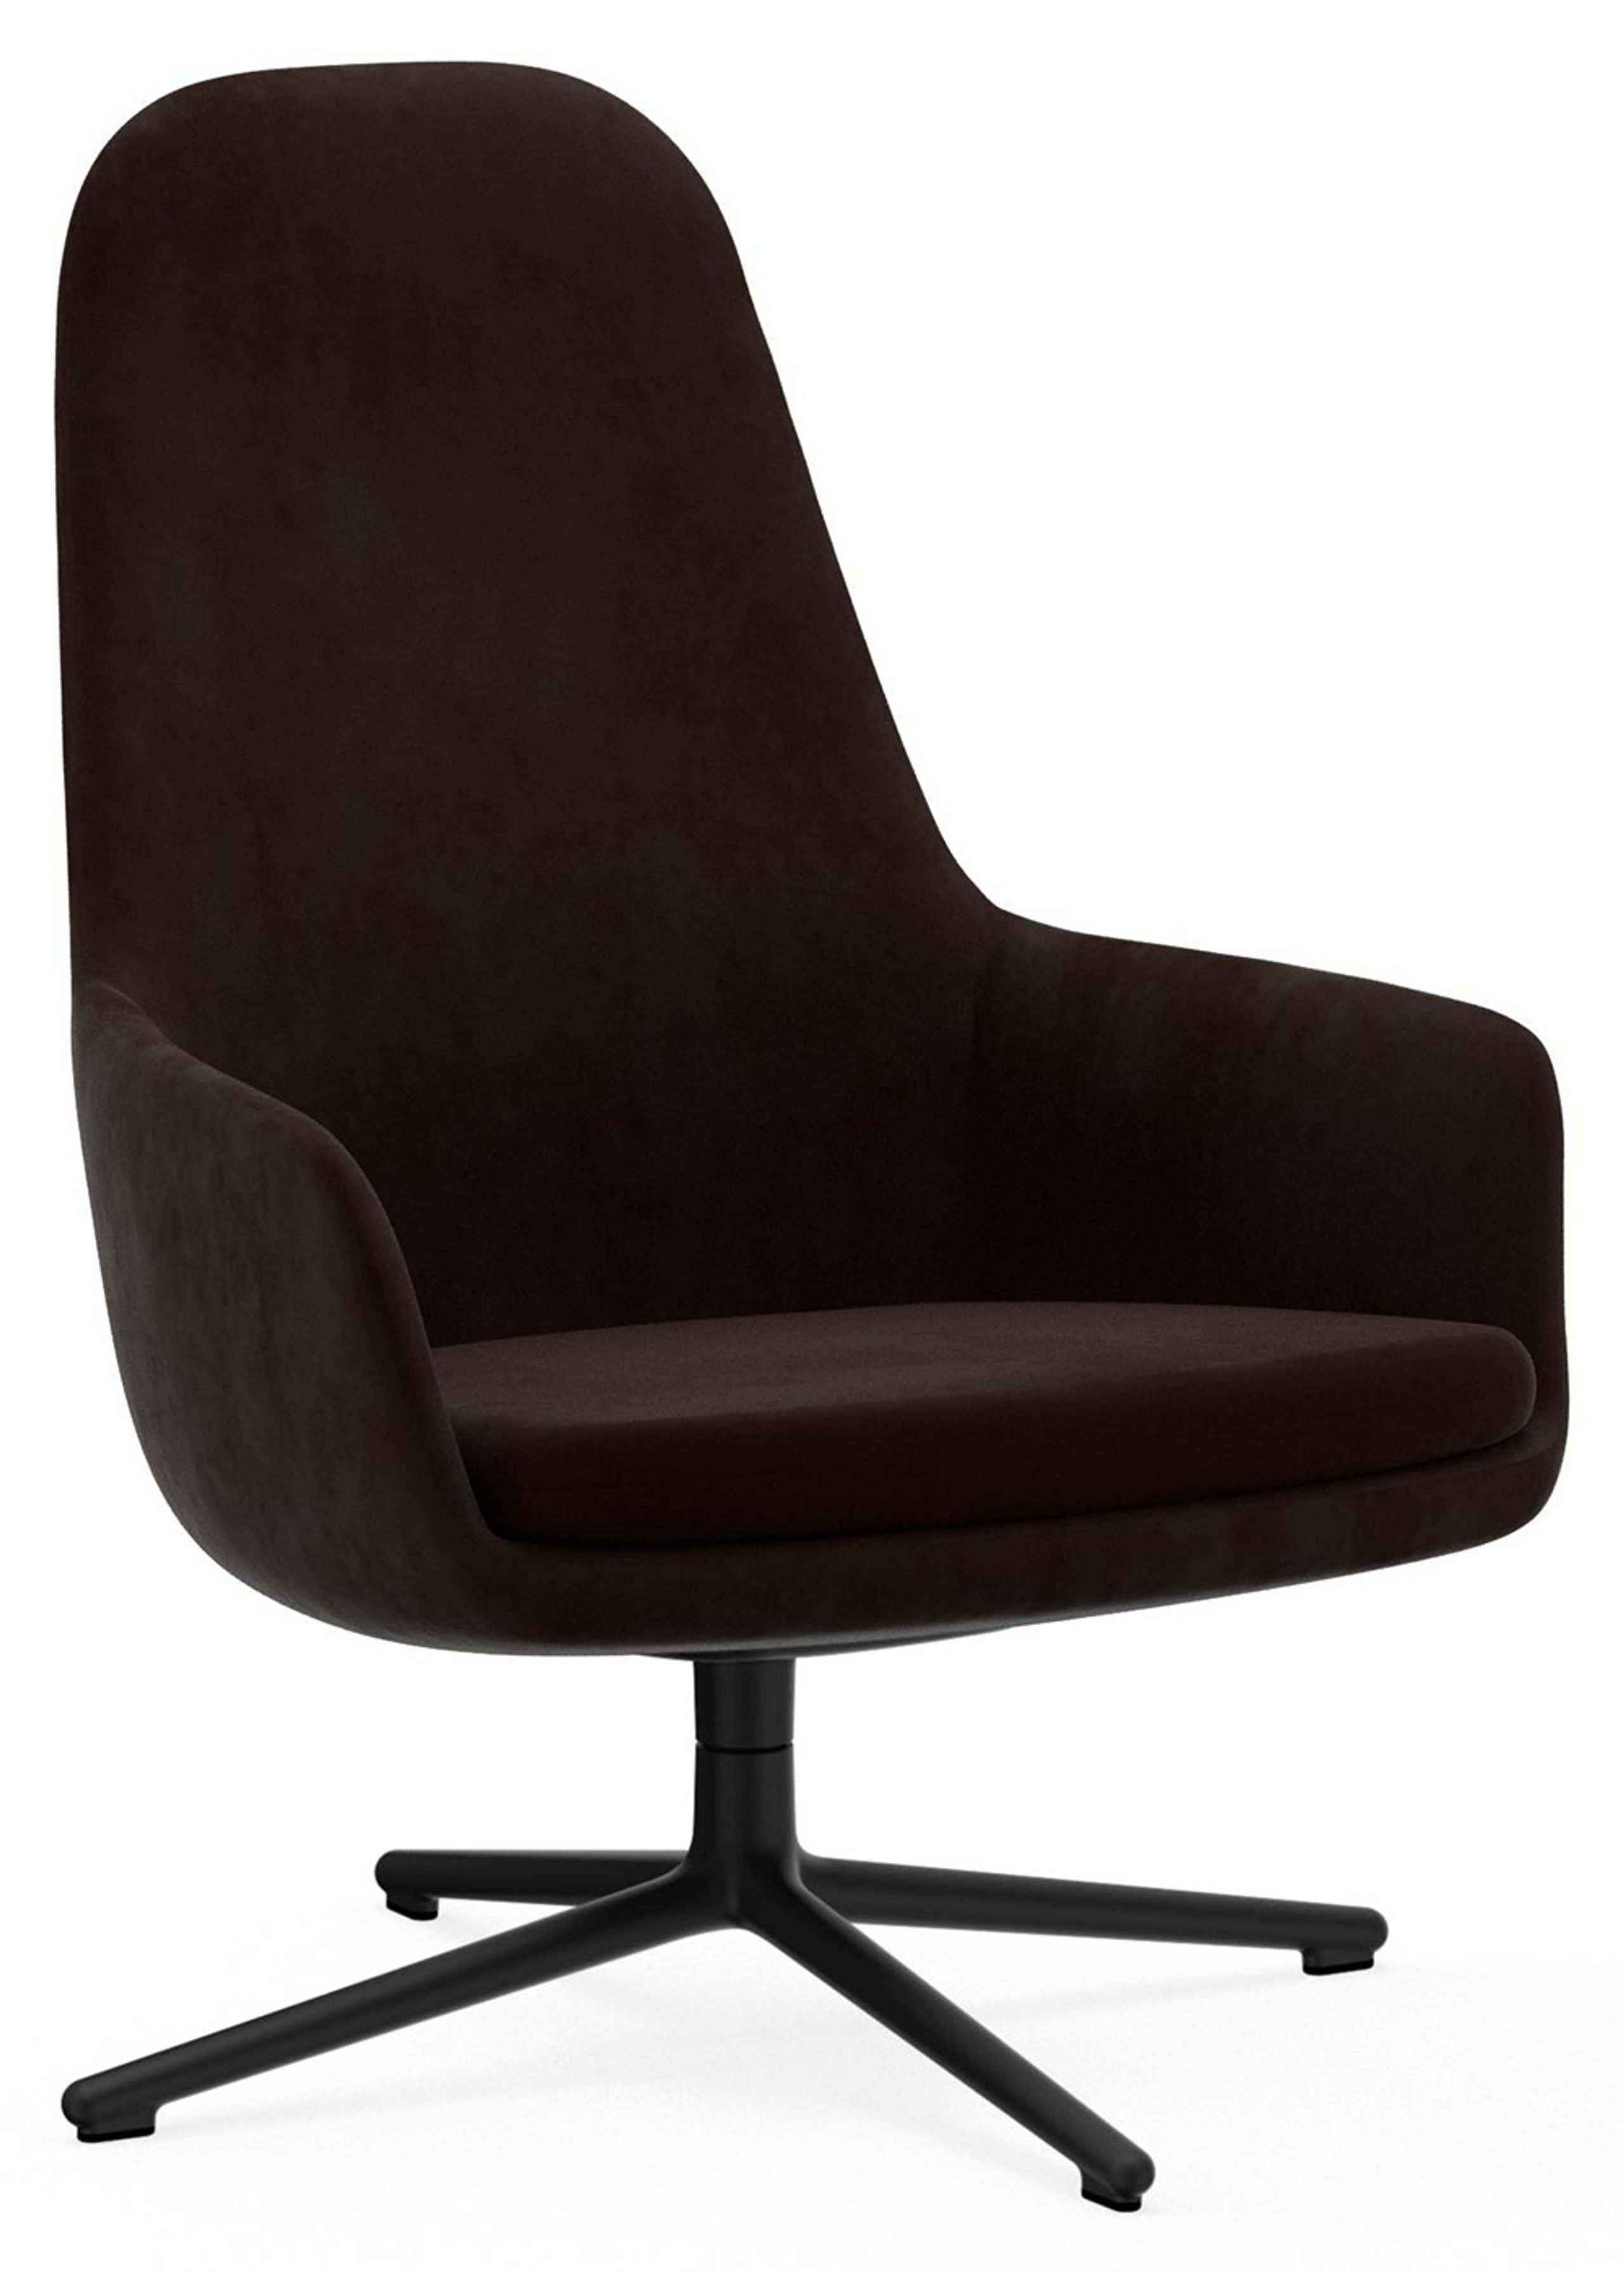 Normann Copenhagen - Poltrona - Era Lounge Chair High Swivel - Black Alu Frame / Fabric: City Velvet